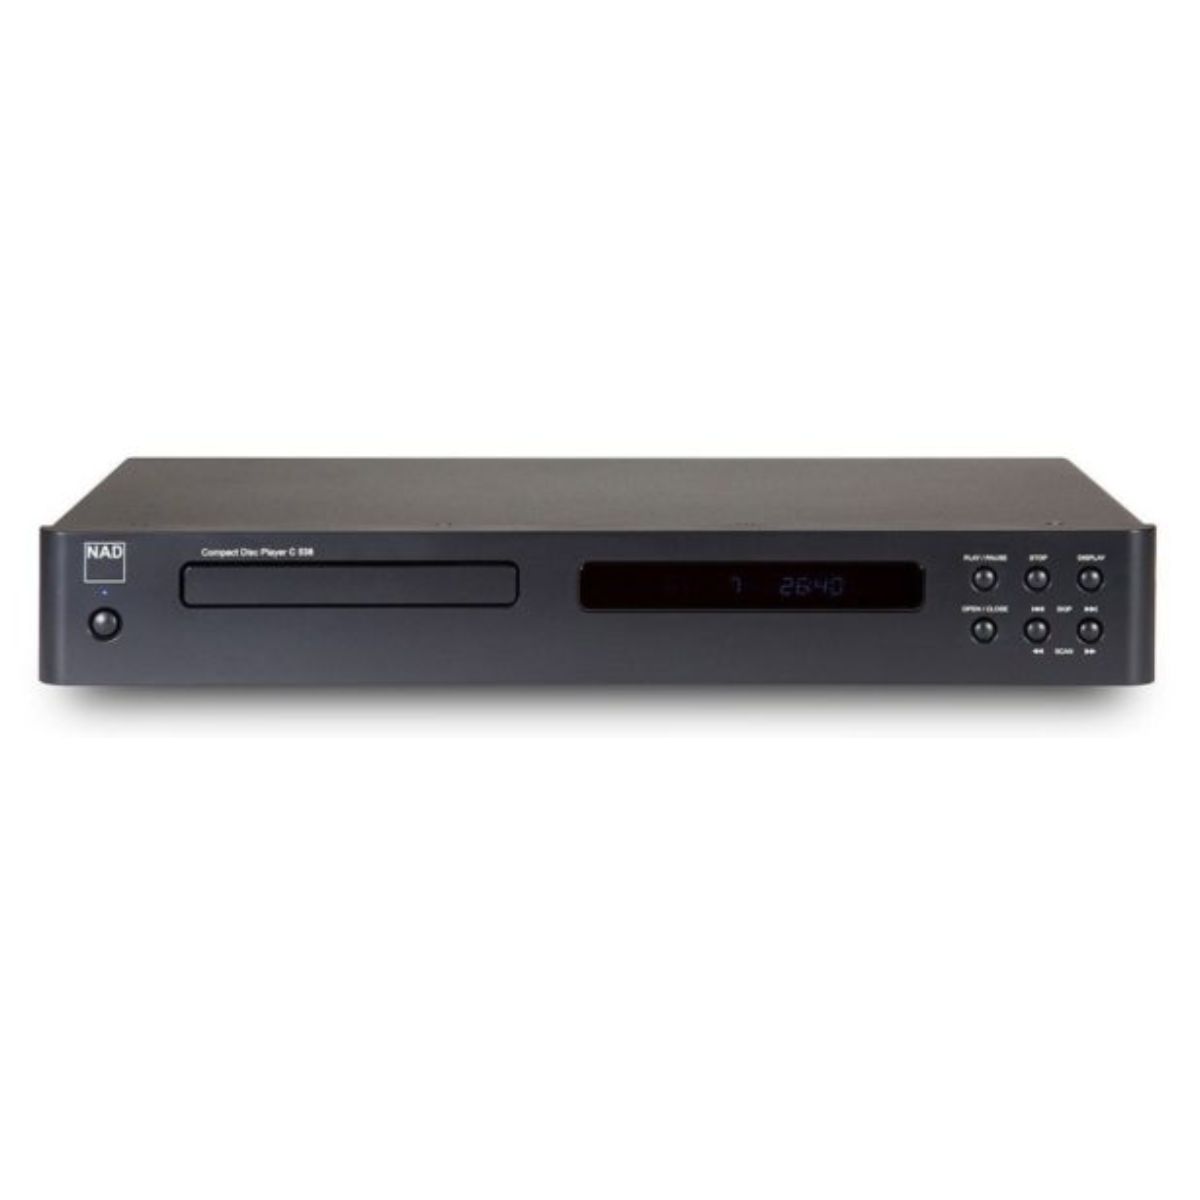 Reproductor de CD de escritorio con altavoces, reproductor de CD Bluetooth  ROADOM Home con sonido estéreo de alta fidelidad, control remoto